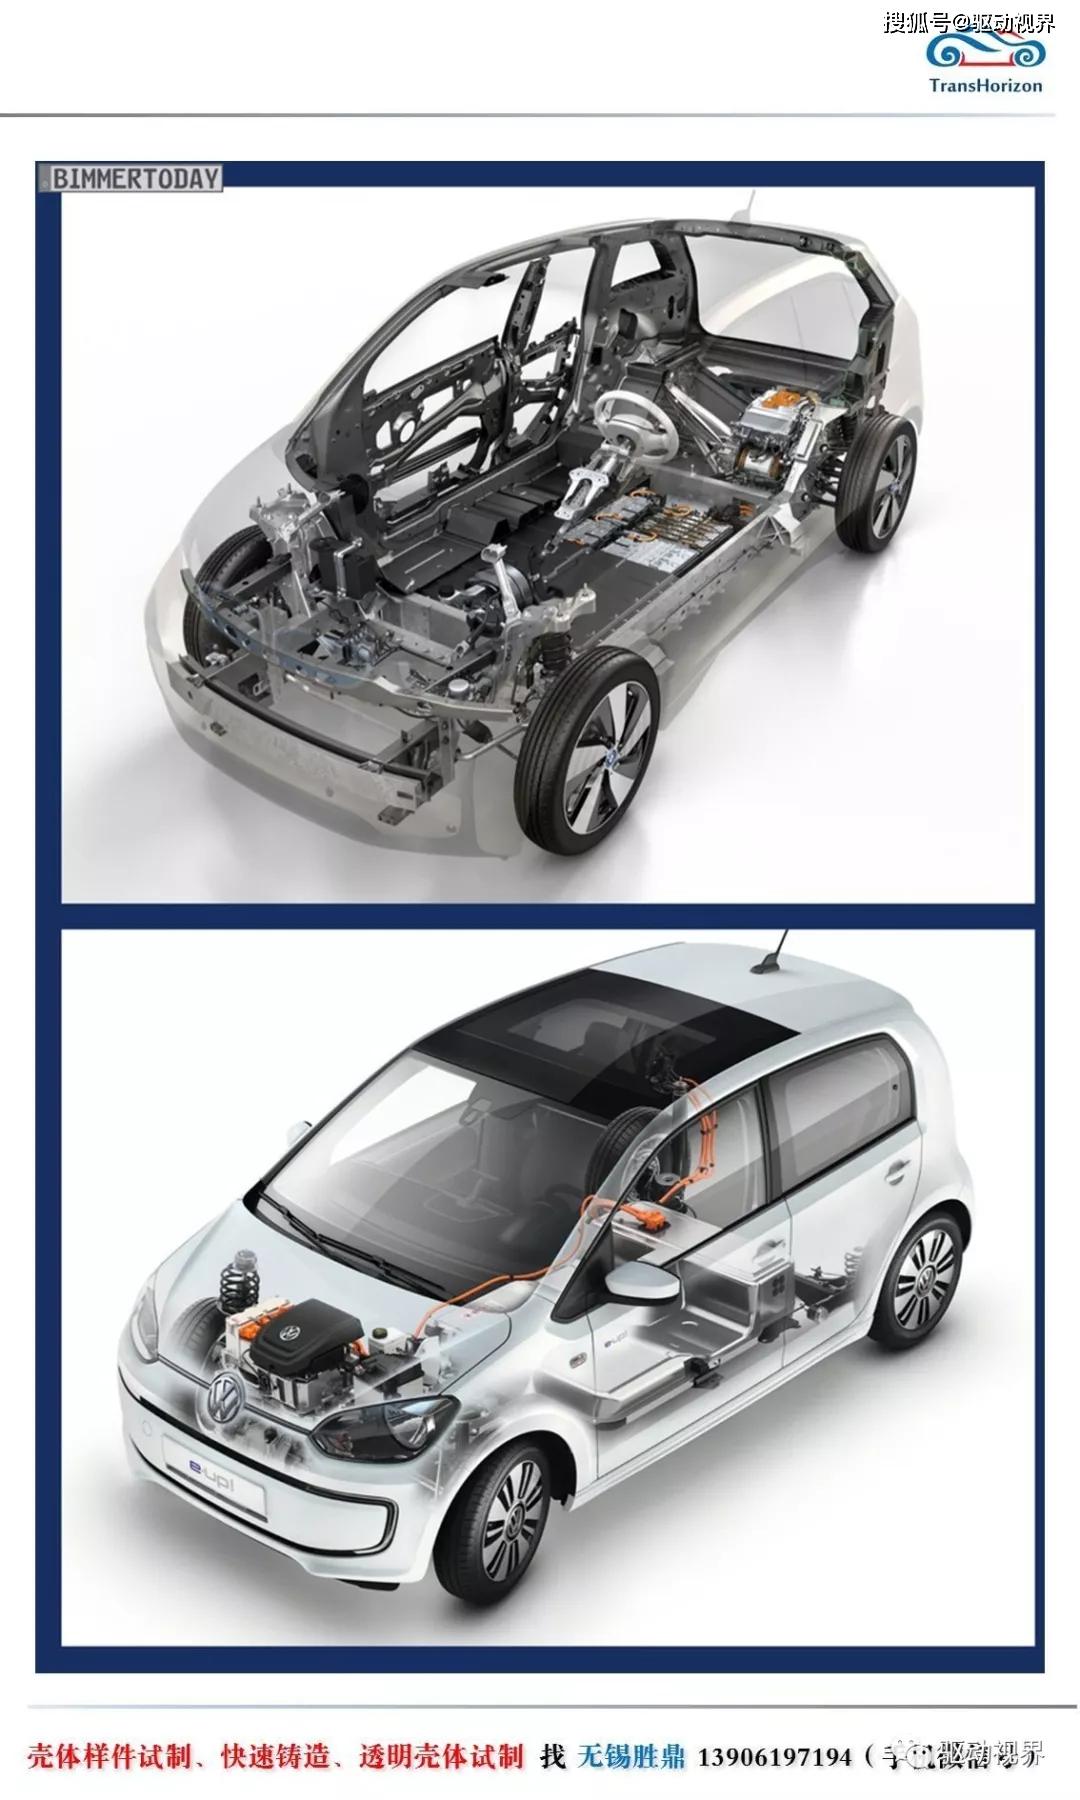 大众eup电动汽车底盘和传动系结构和功能解析